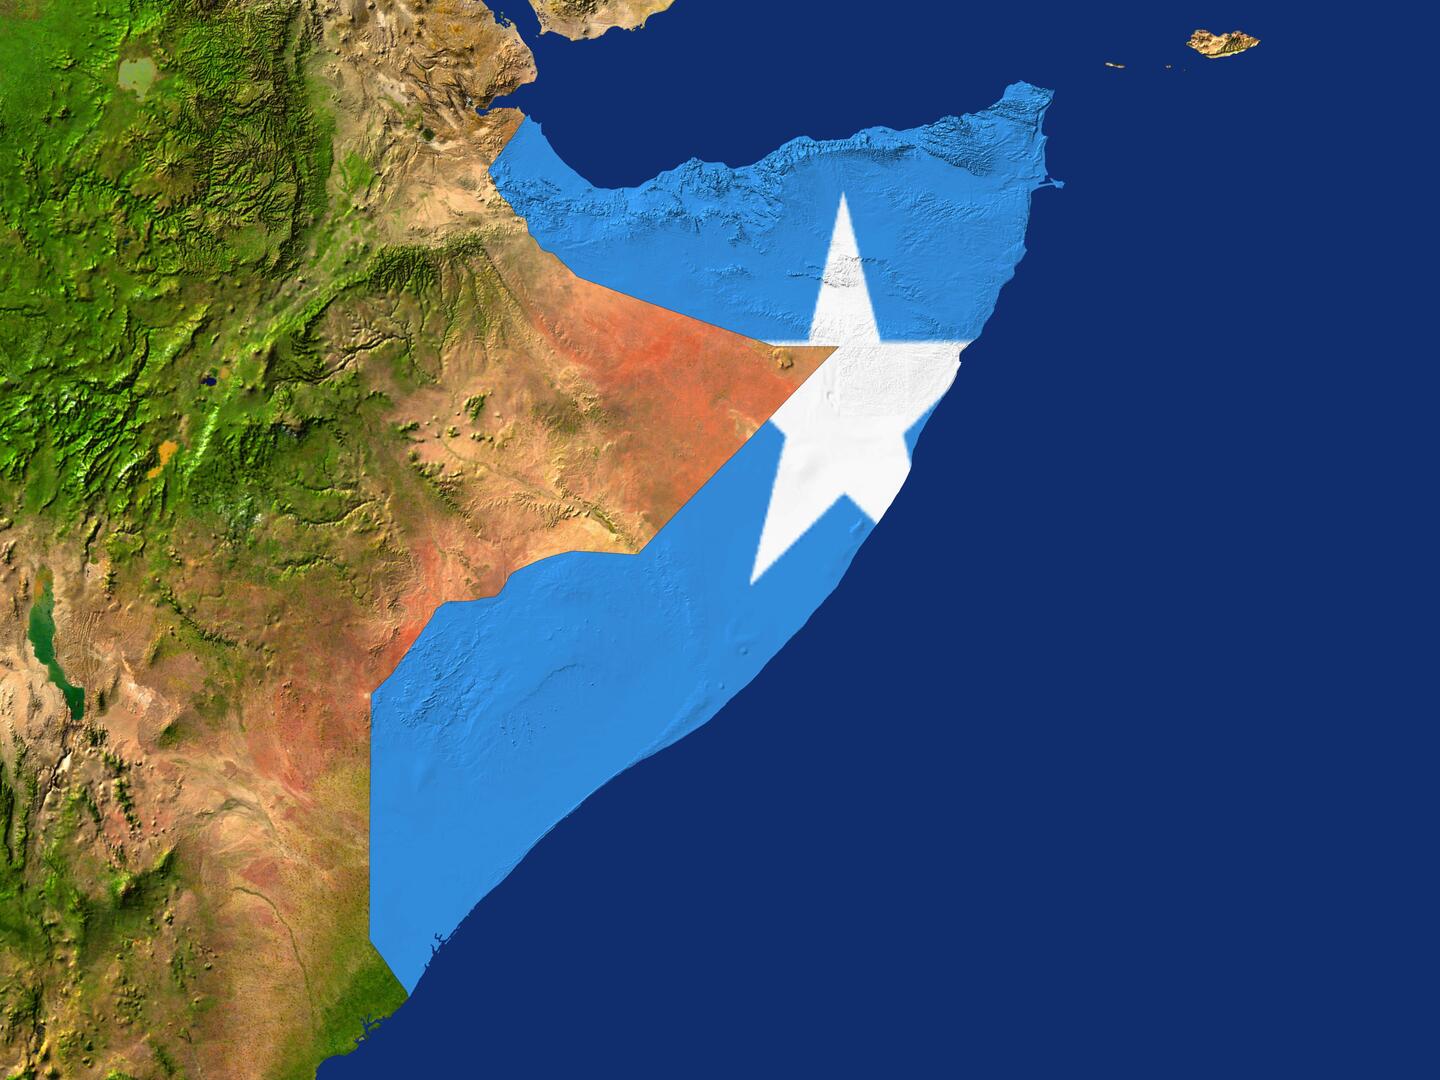 الحكومة الصومالية تستدعي سفيرها في أديس أبابا بعد الاتفاق بين إثيوبيا وأرض الصومال